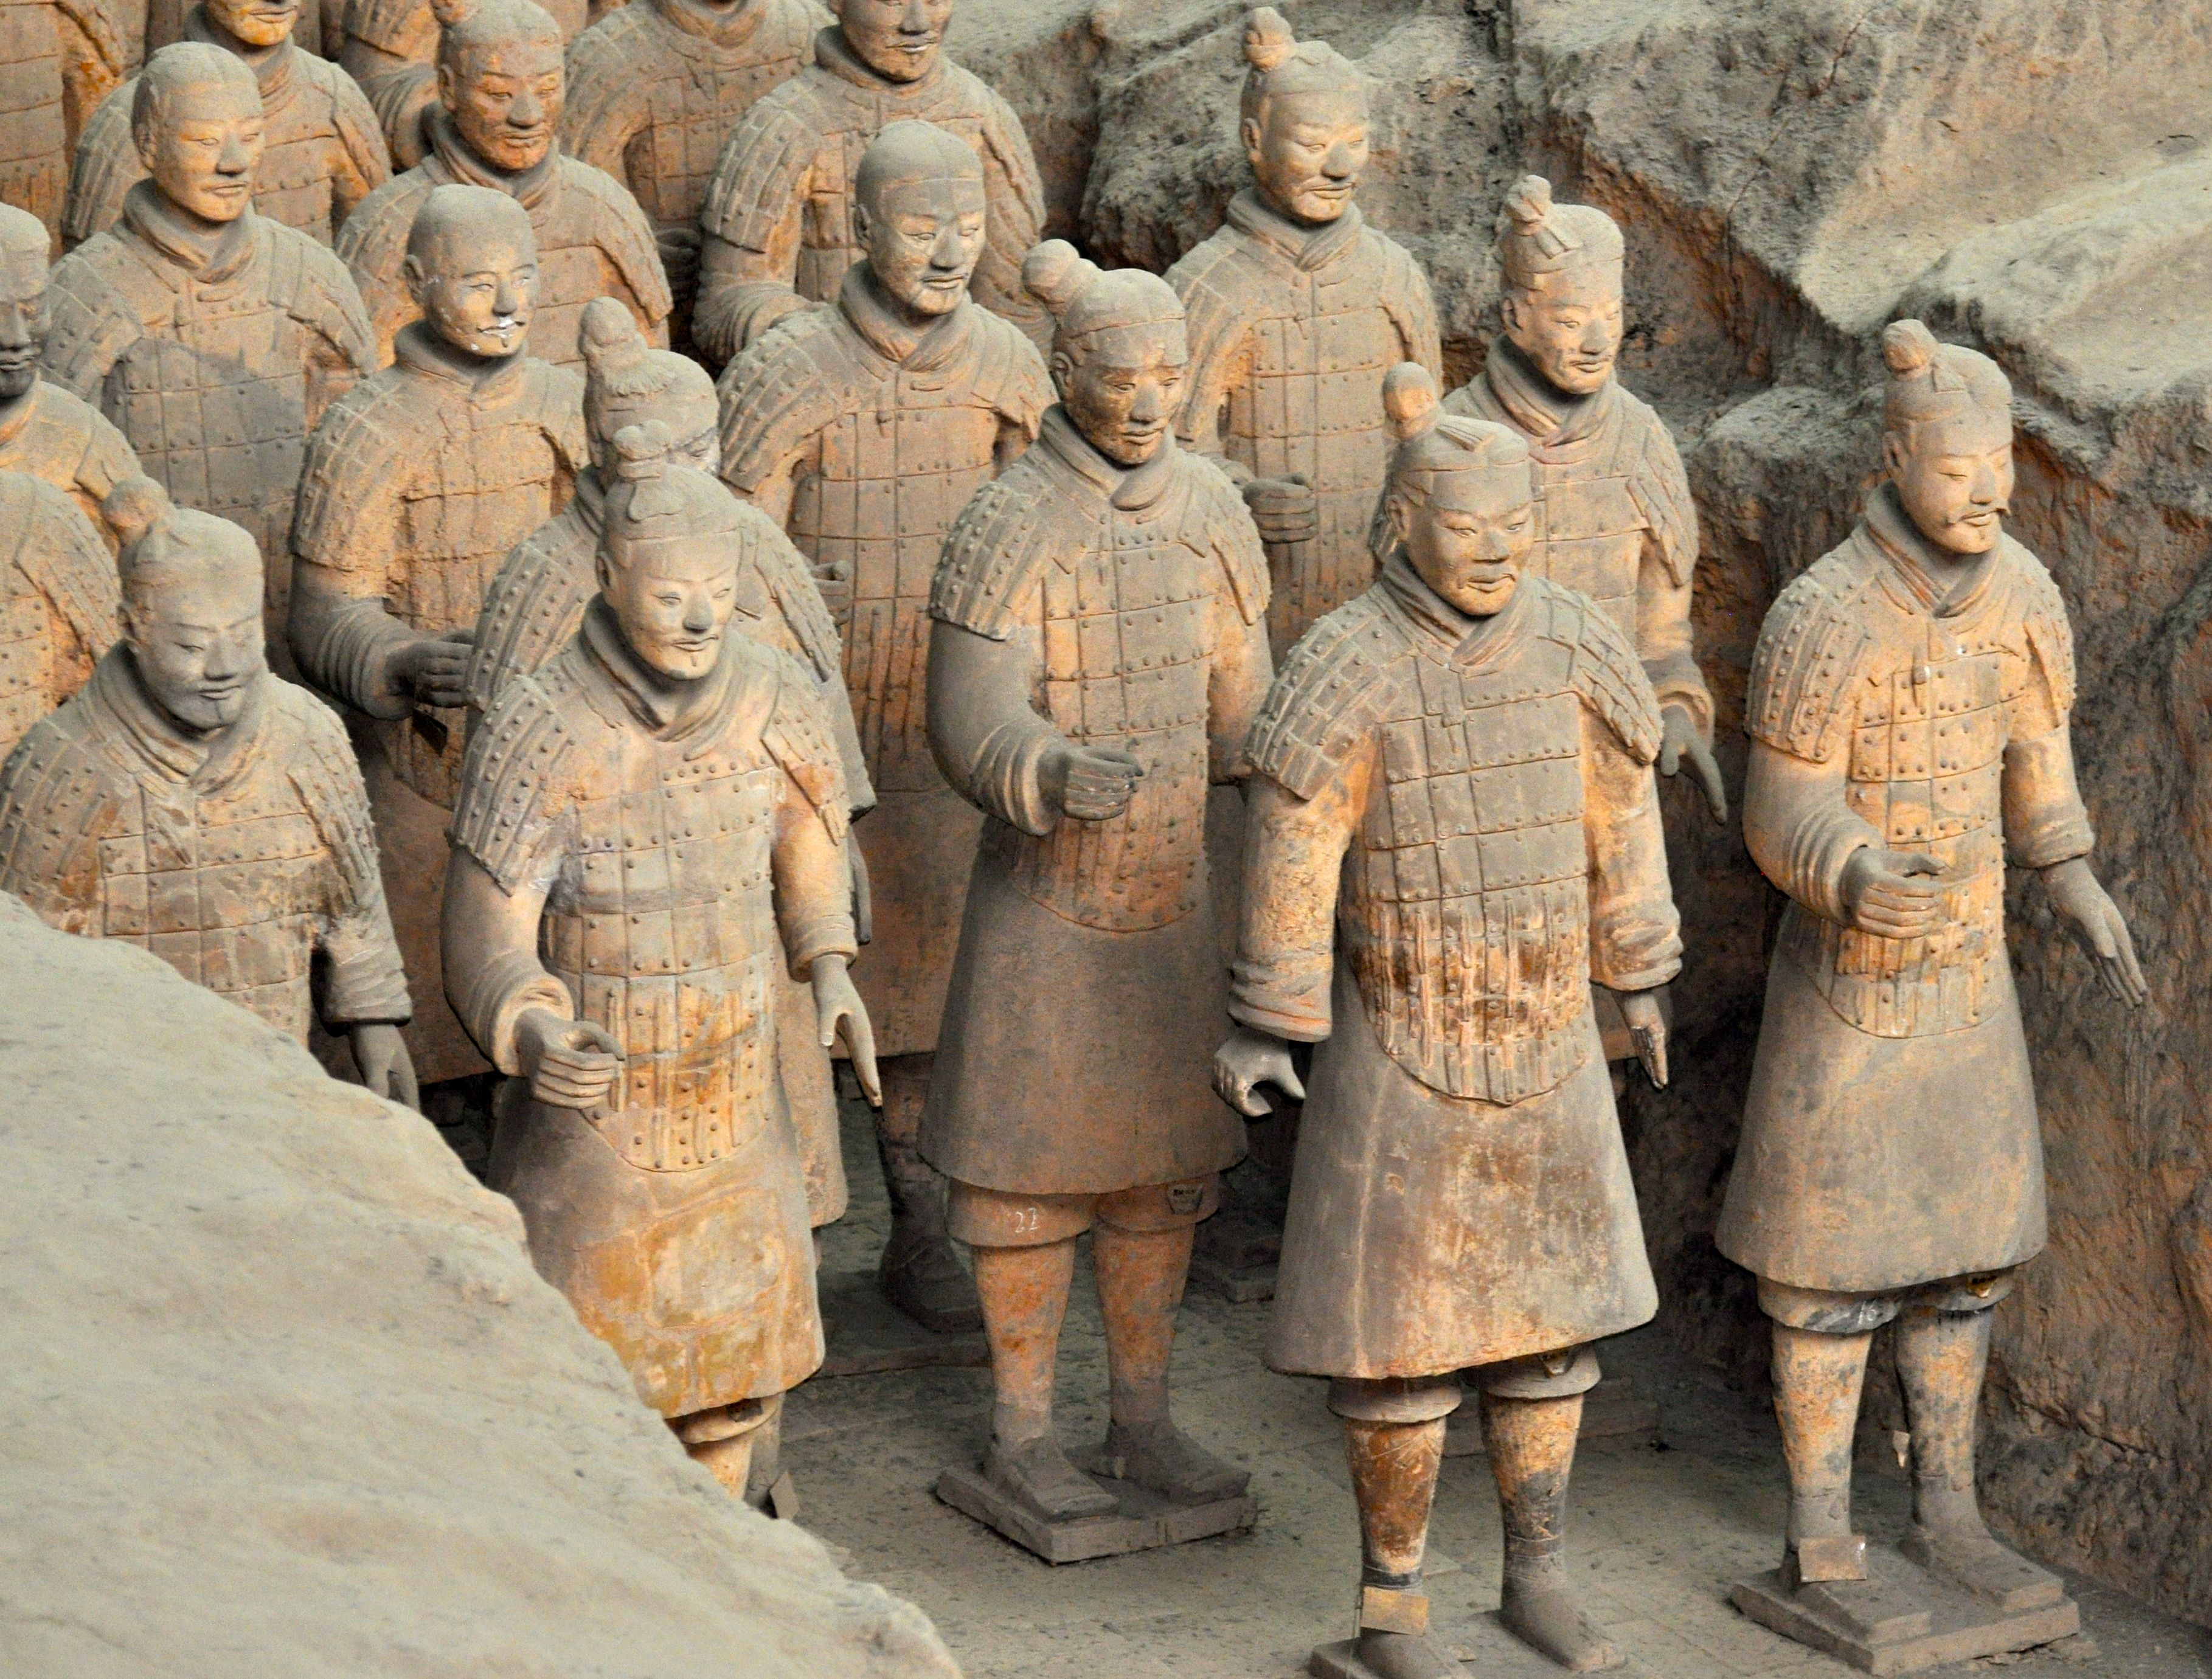 Терракотовая армия, китай – интересные факты, история создания | чайна хайлайтс